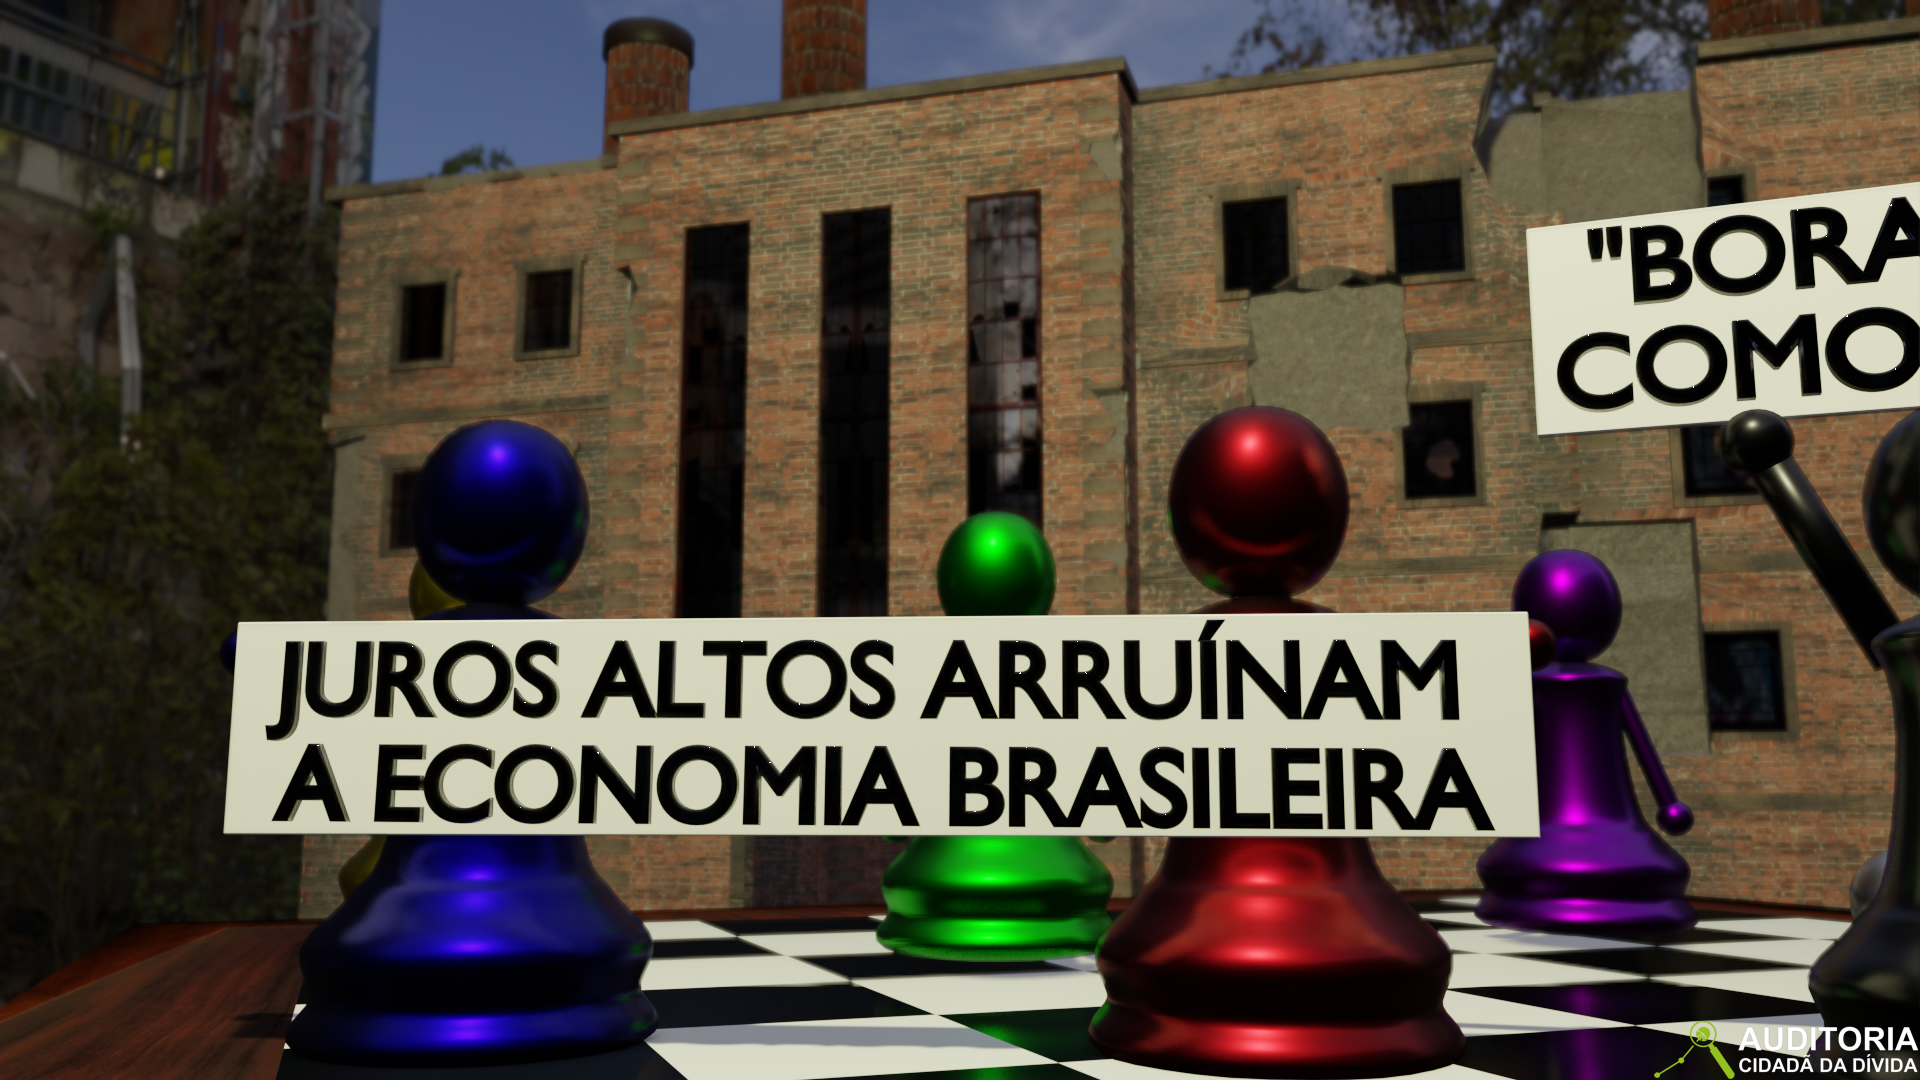 JUROS ALTOS AMARRAM O BRASIL – Vídeo 19 #EHORAdeVIRARoJOGO